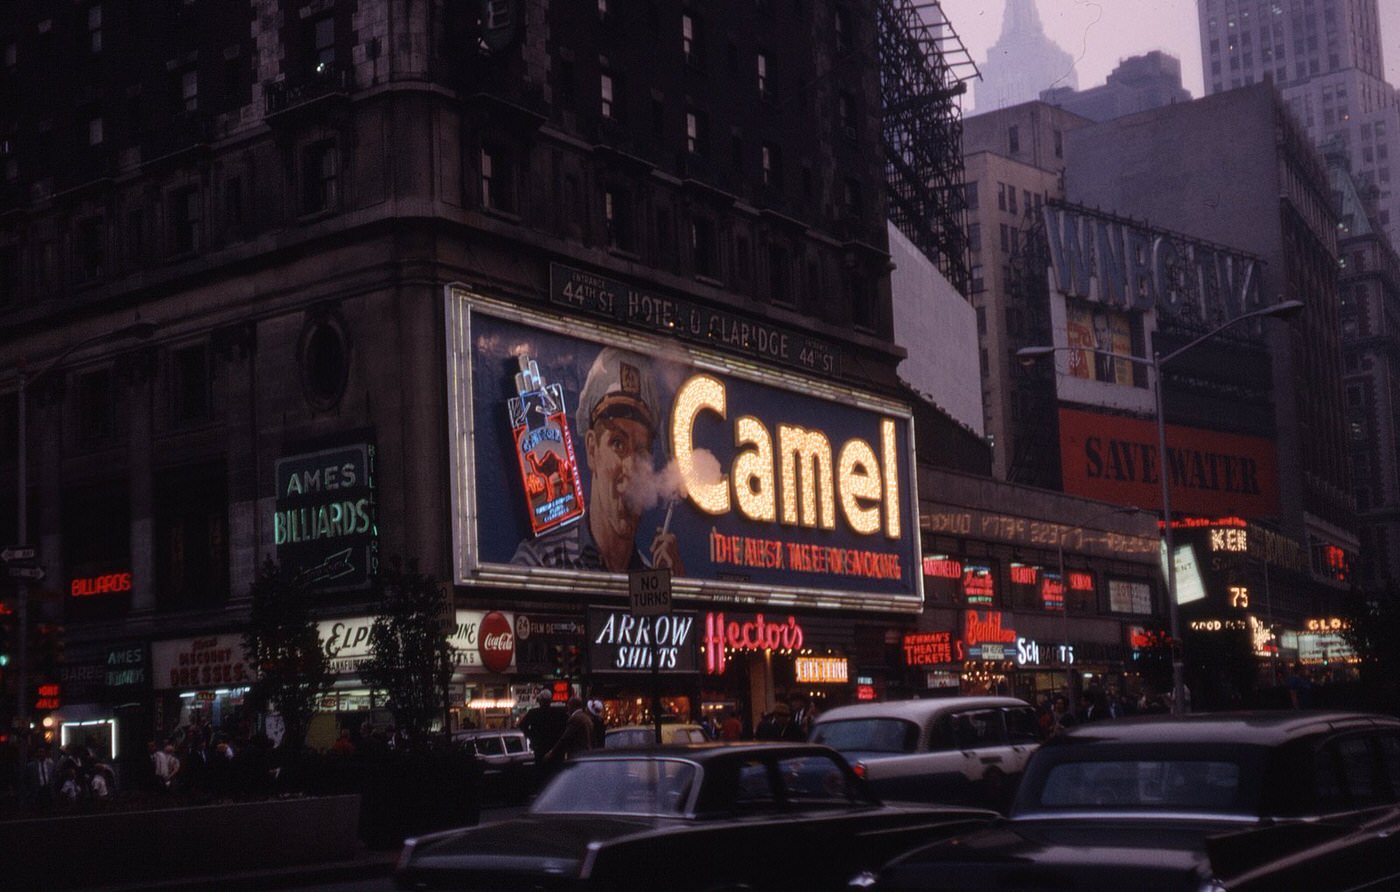 Camel Cigarette Billboard sign near Times Square, 1965